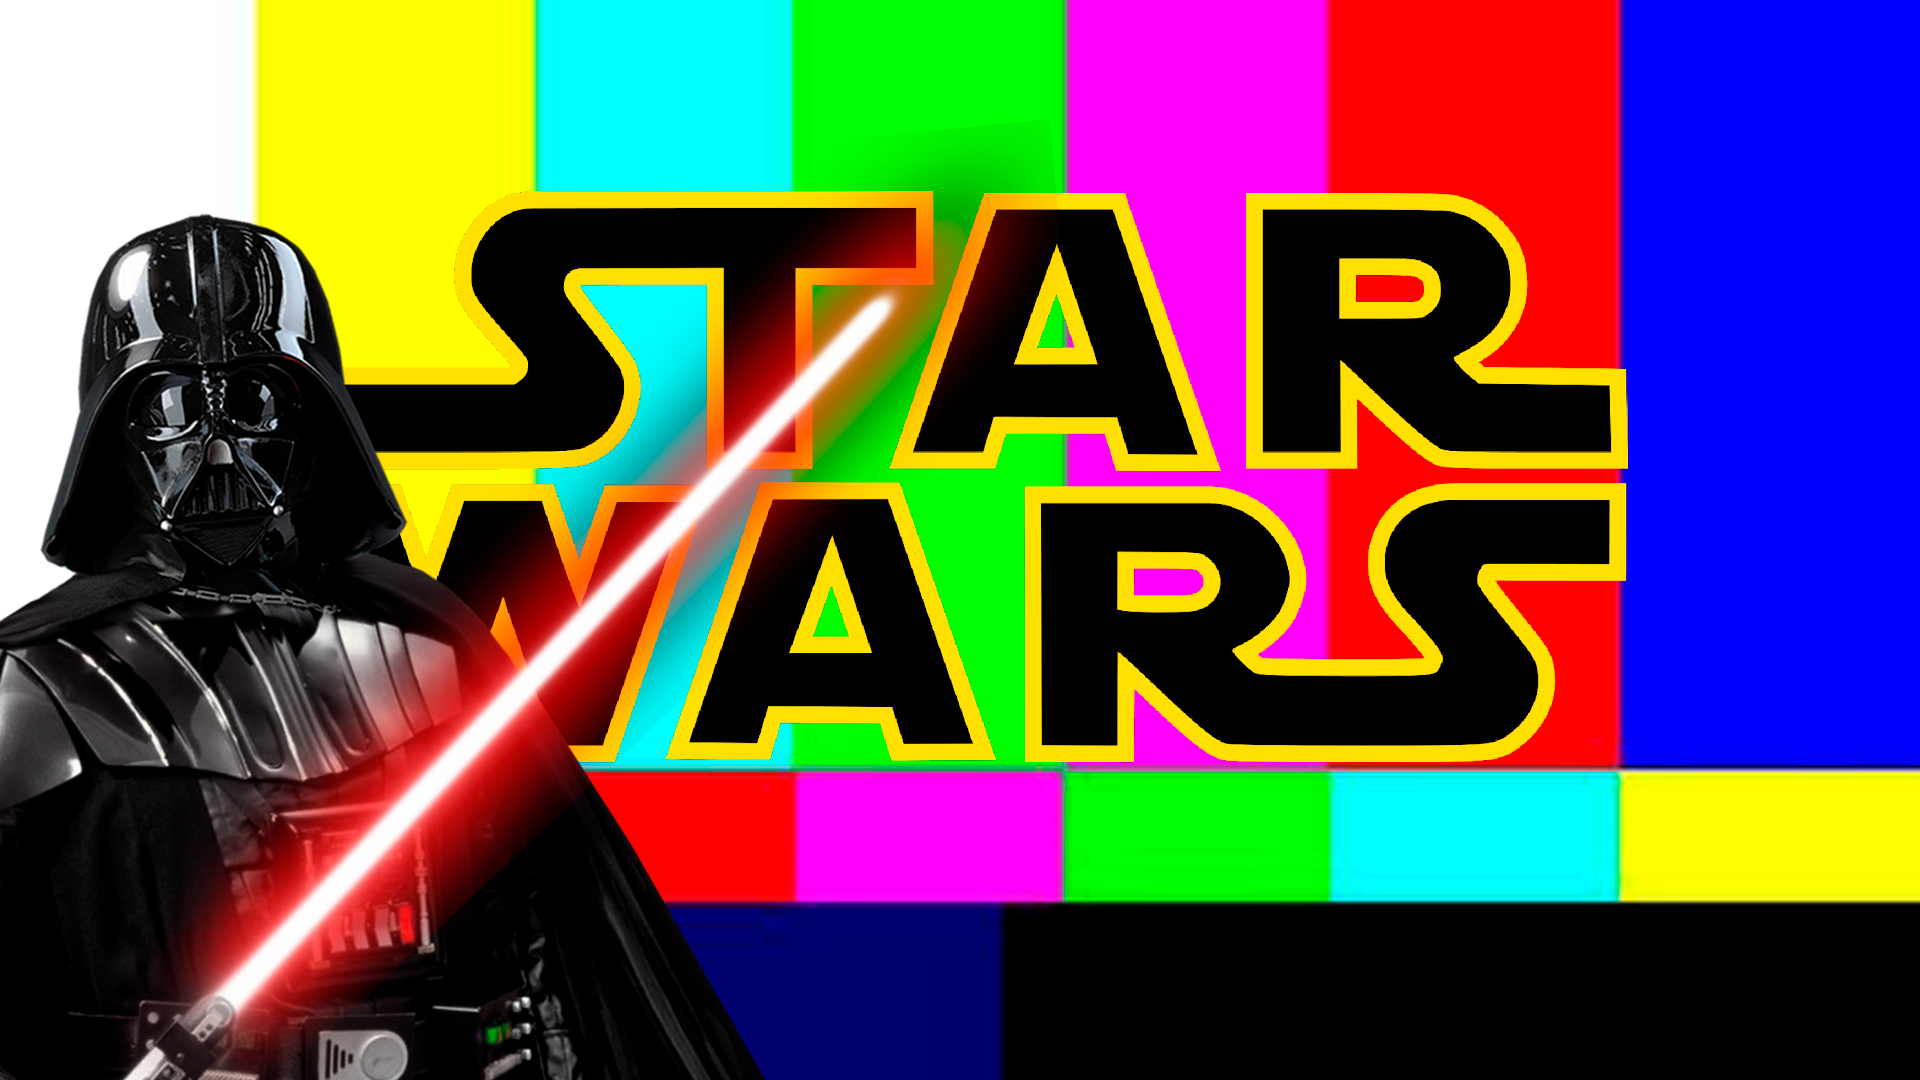 Tramas Regurgitadas e o Vício no “Volume”: Como a Disney Destruiu a Saga Star Wars